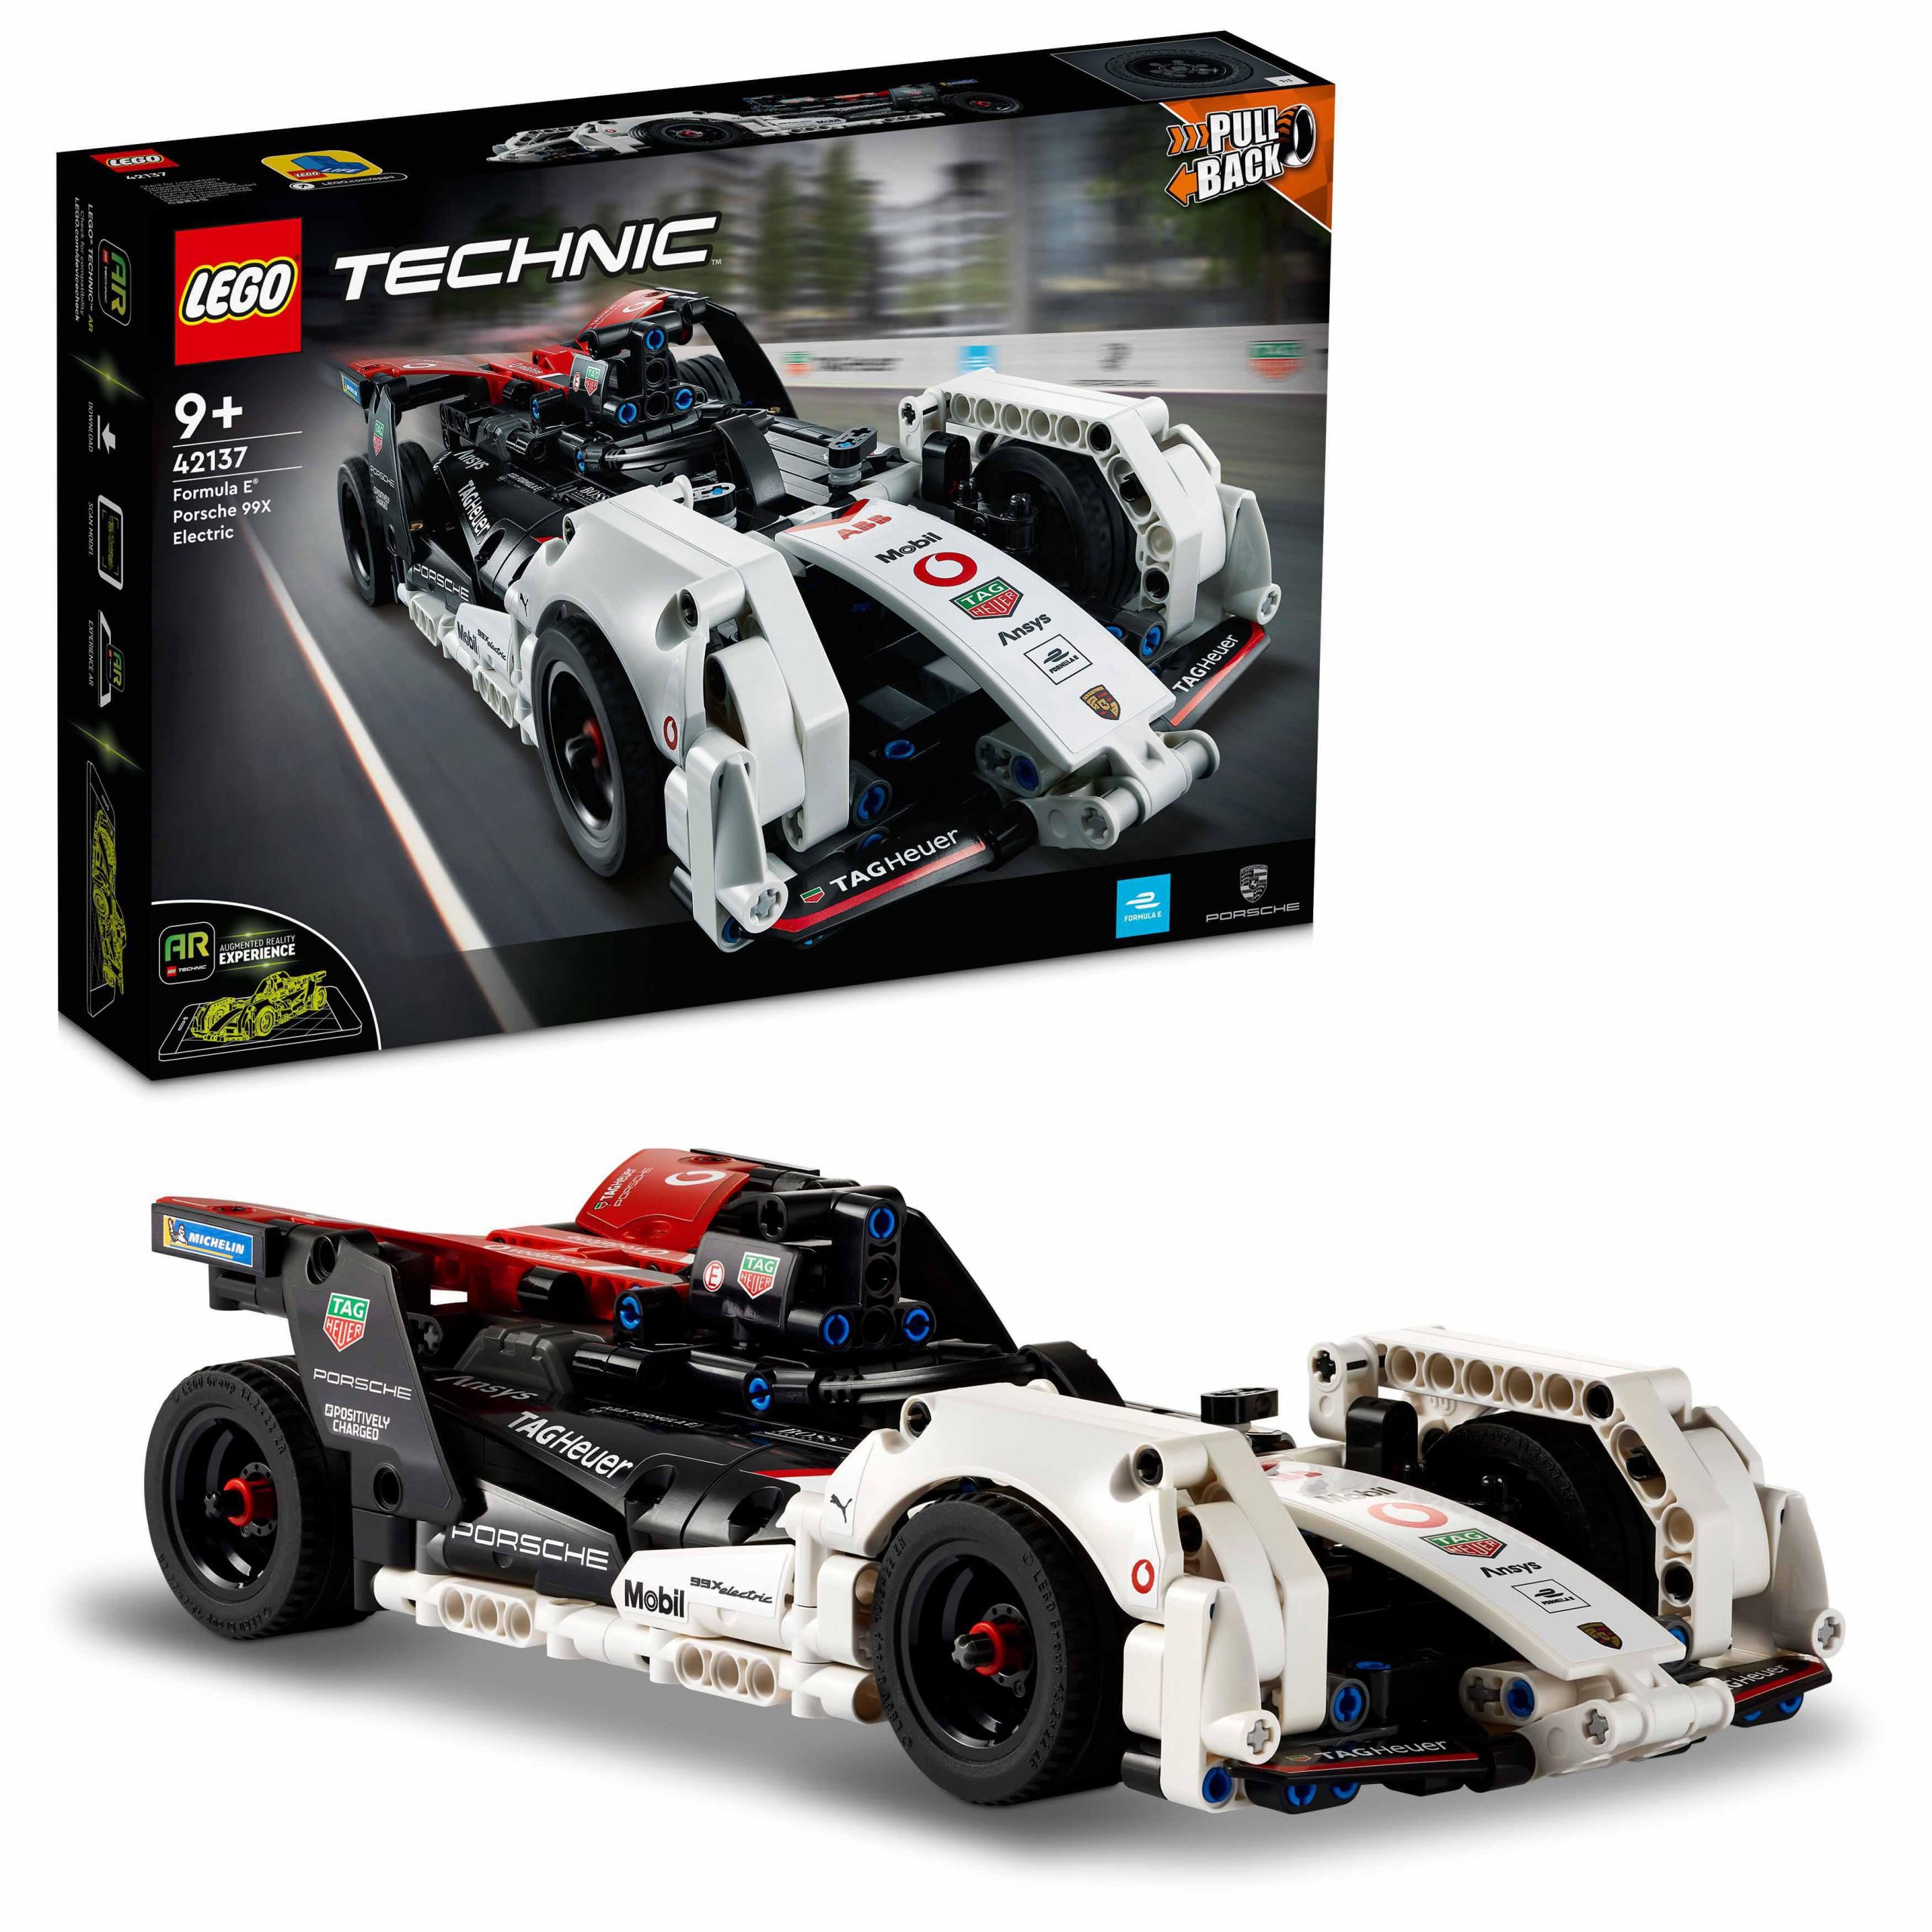 Lego technic formula e porsche 99x electric, auto da corsa con app ar, modellino da costruire, macchina giocattolo, 42137 - LEGO TECHNIC, Lego